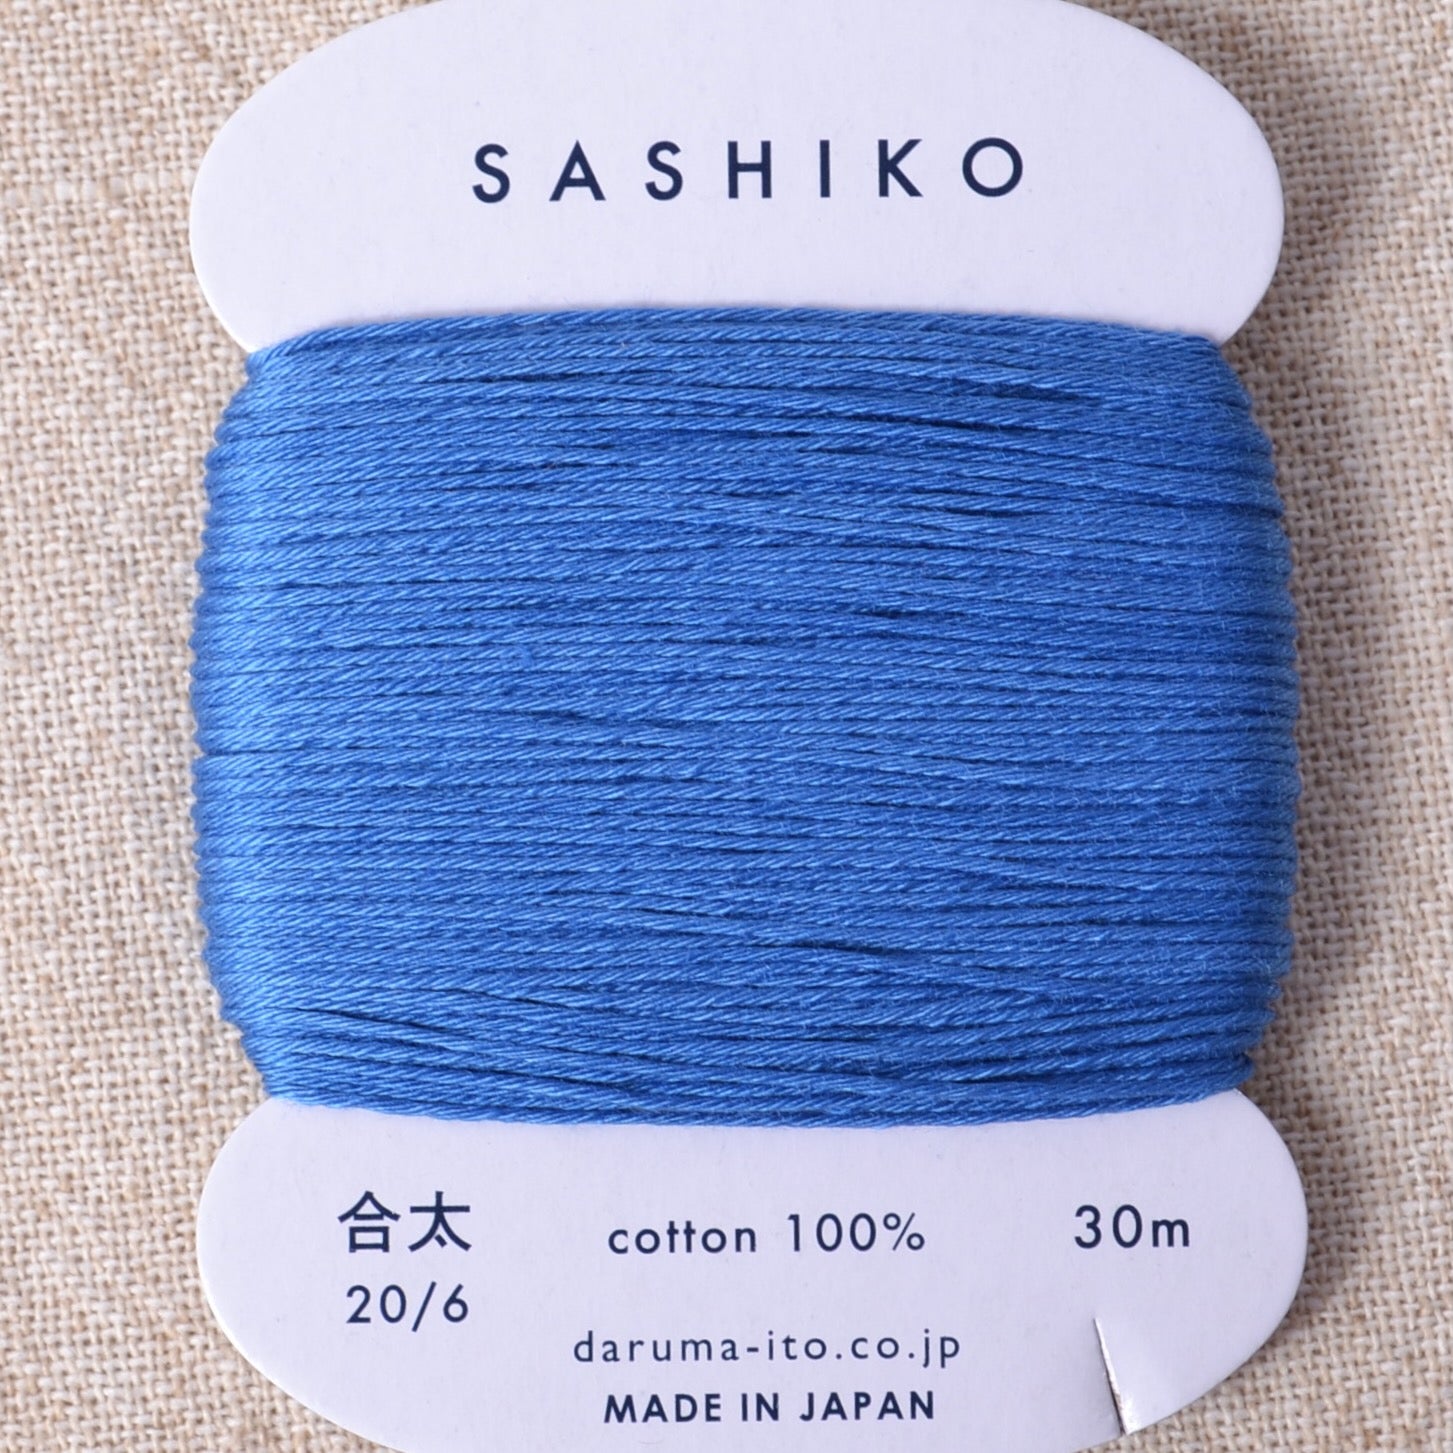 Blue sashiko thread, 20/6 